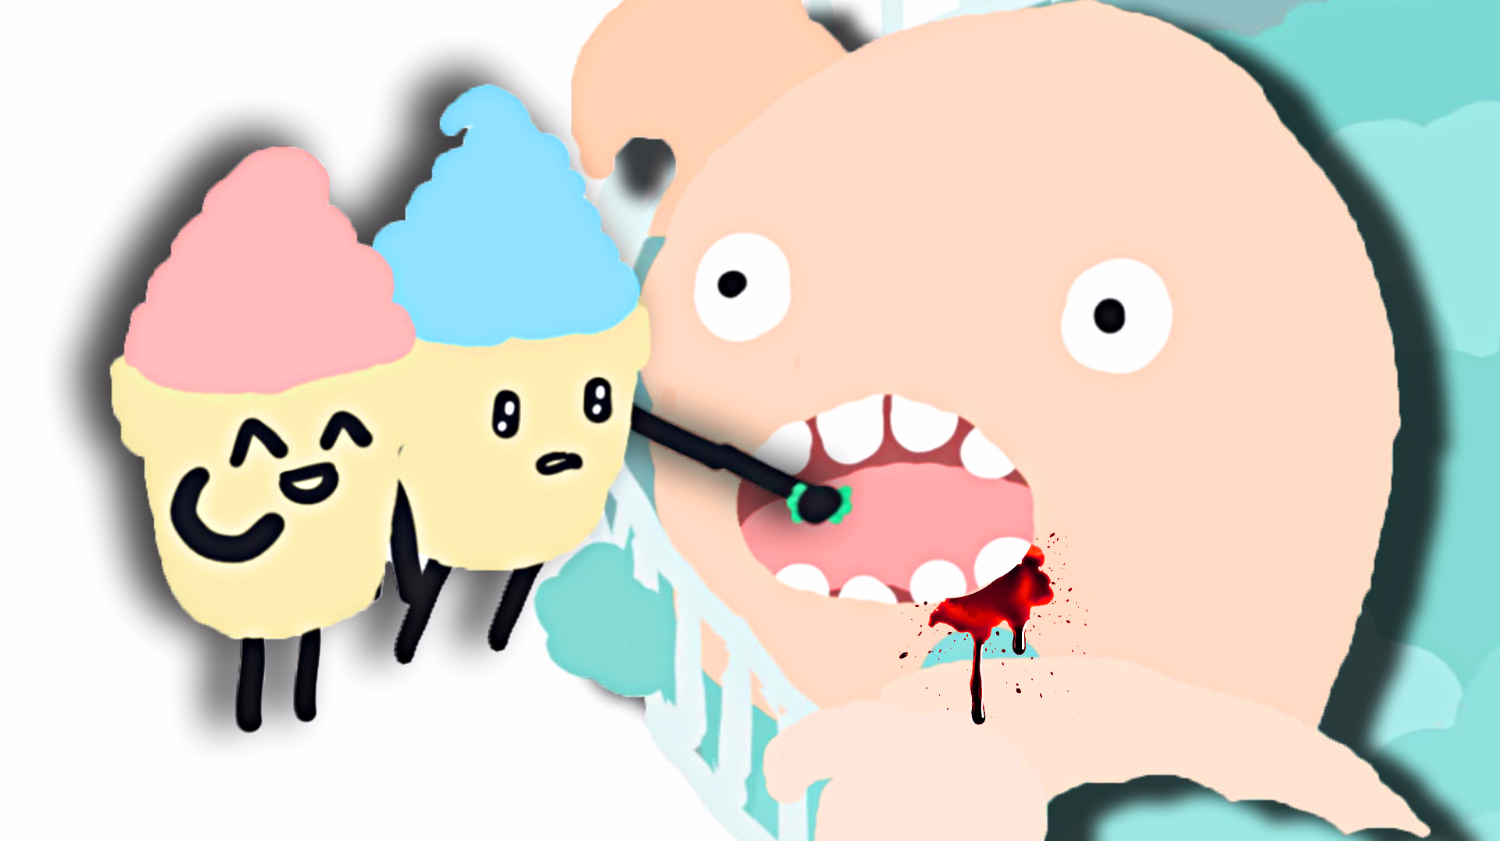 【屌德斯解说】 模拟冰淇淋 约会去动物园给巨型怪兽喂食！